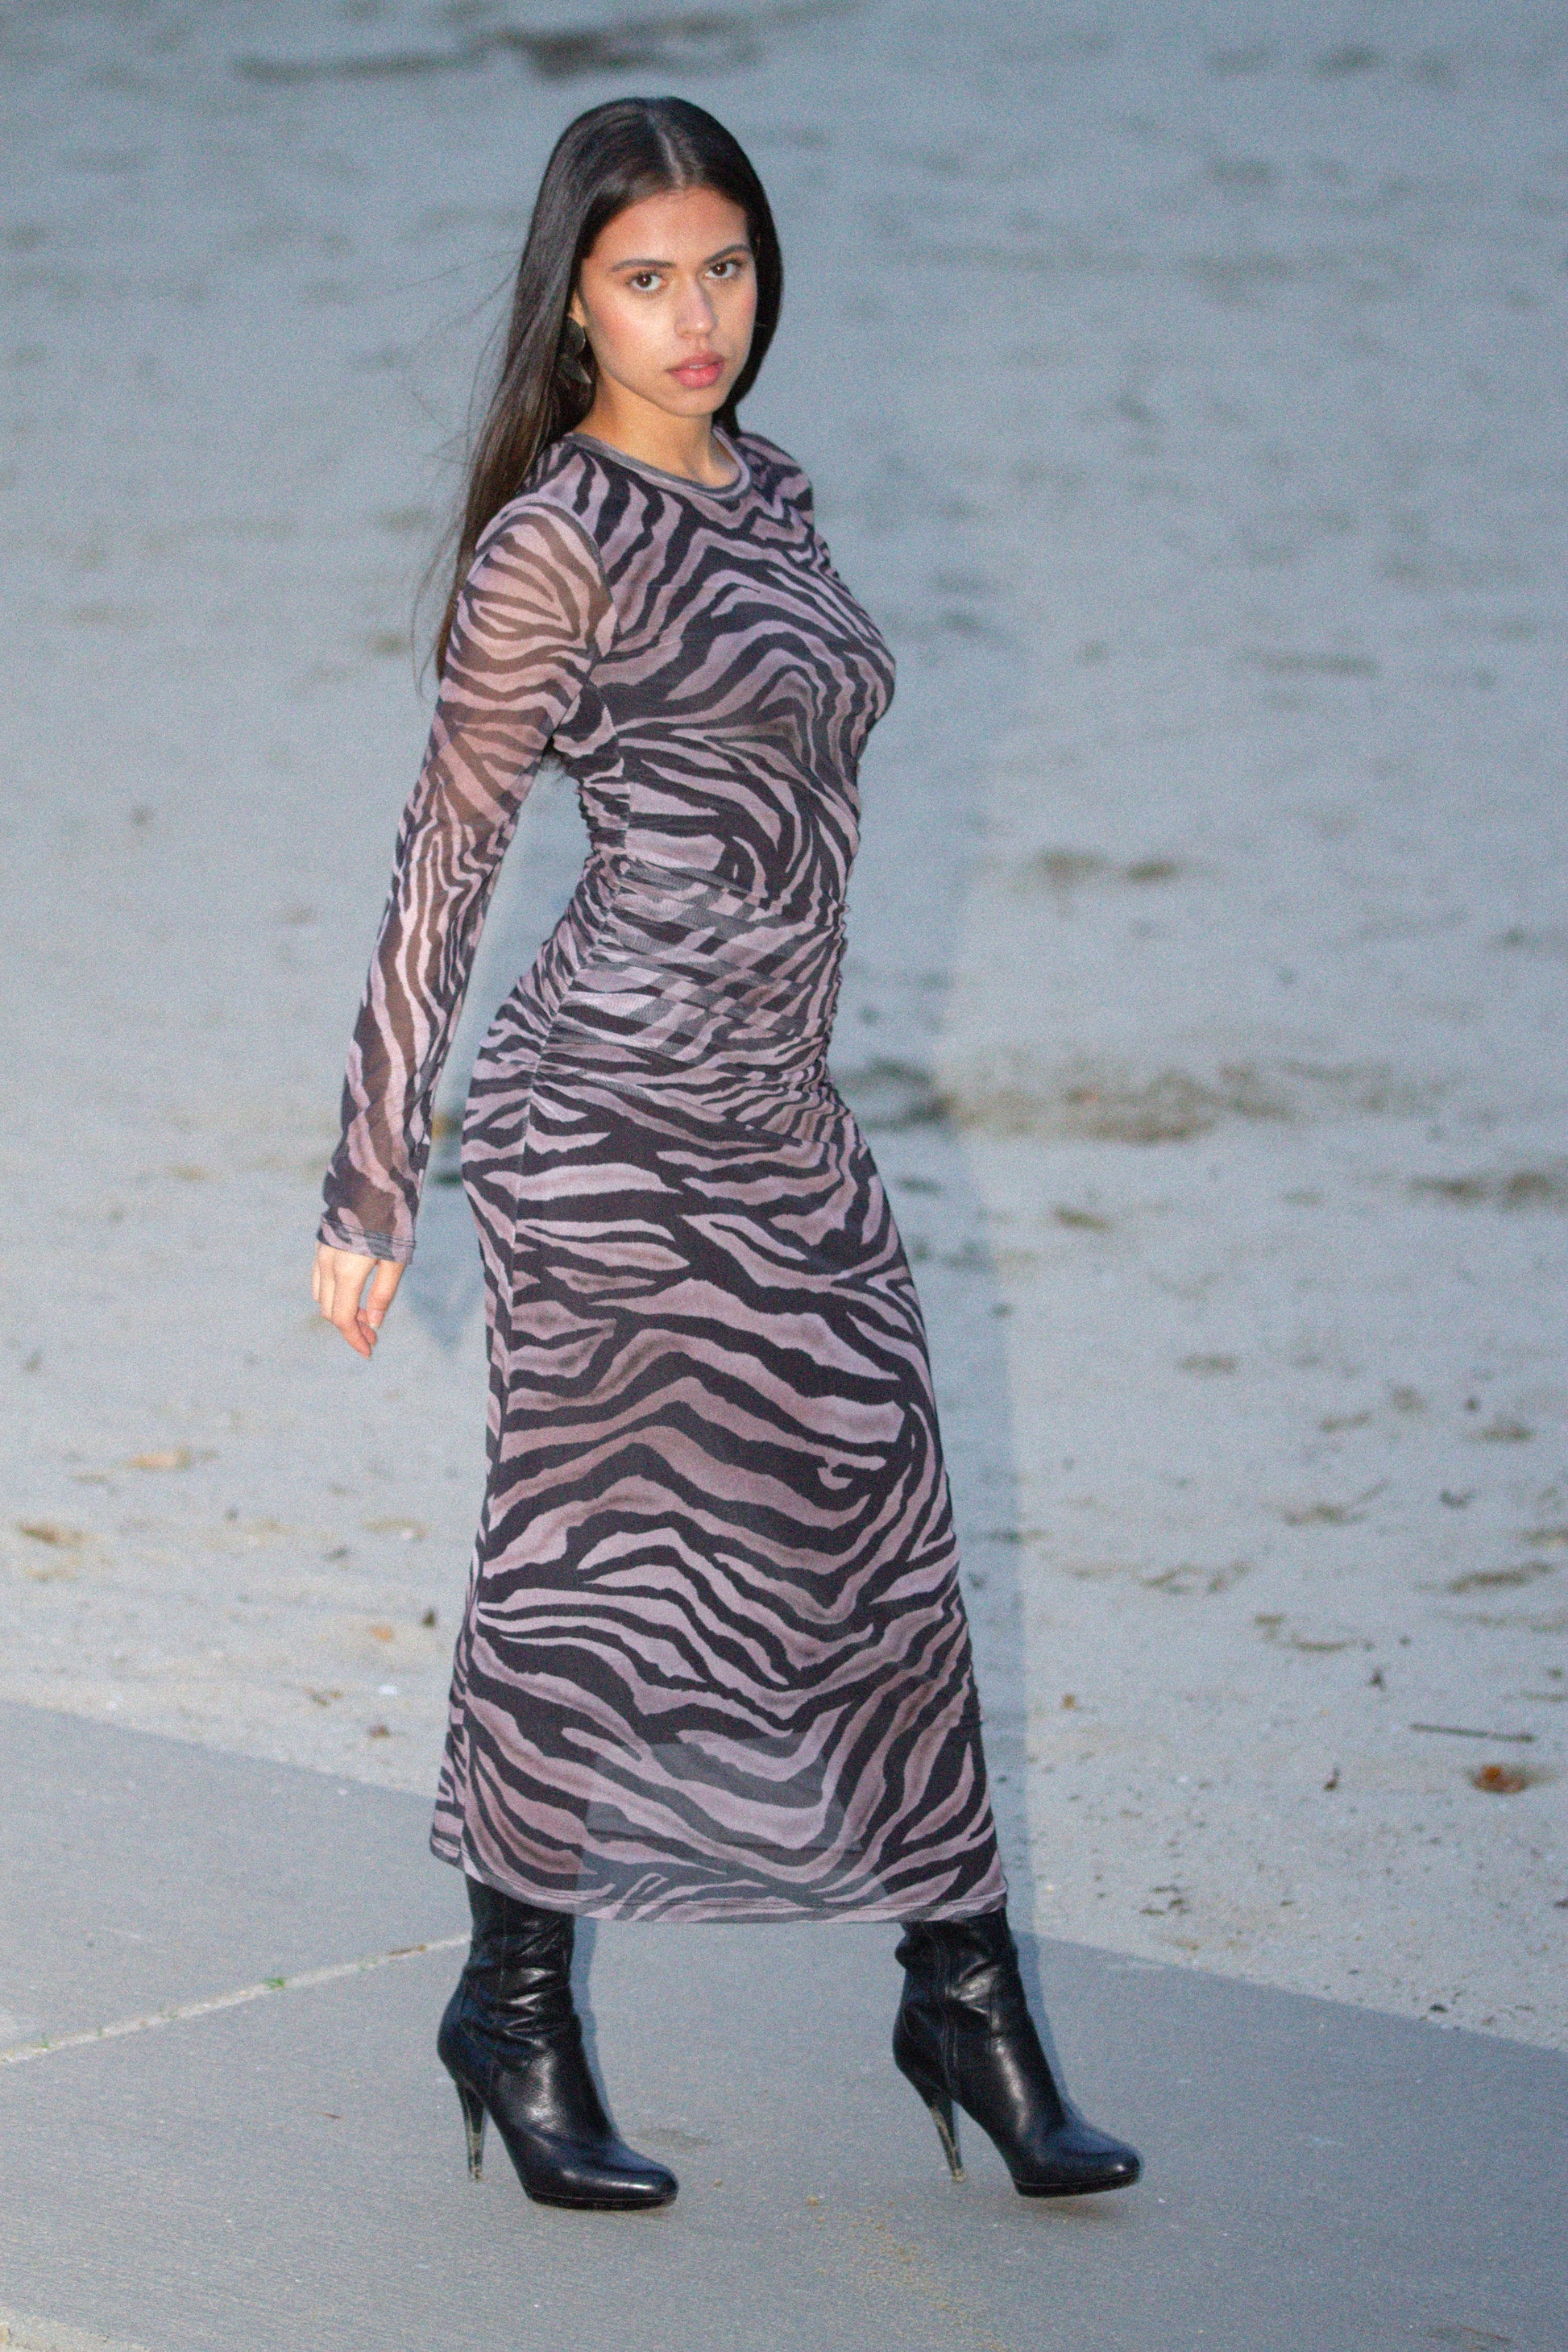 Zebra patterned Maxi dress